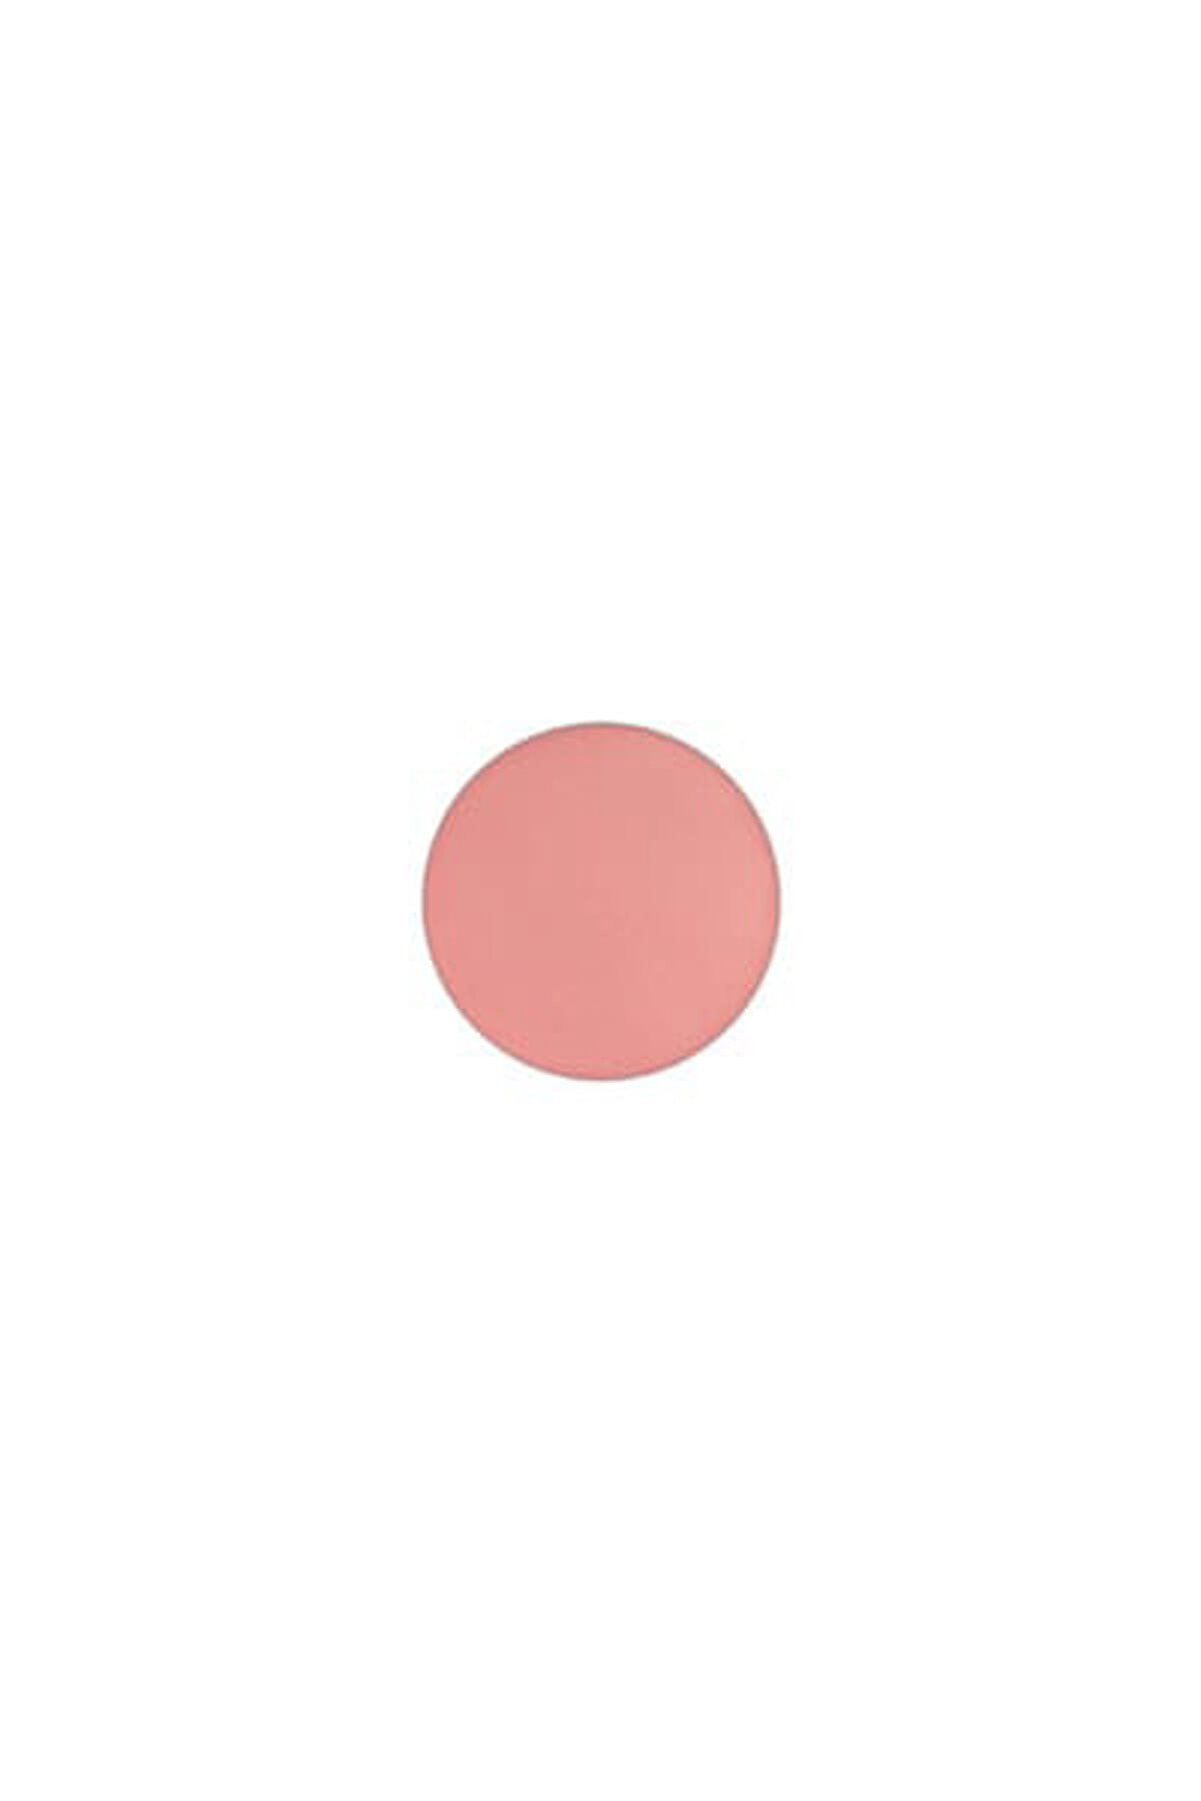 Mac Refill Allık - Powder Blush Pro Palette Refill Pan Melba 6 g 773602042180